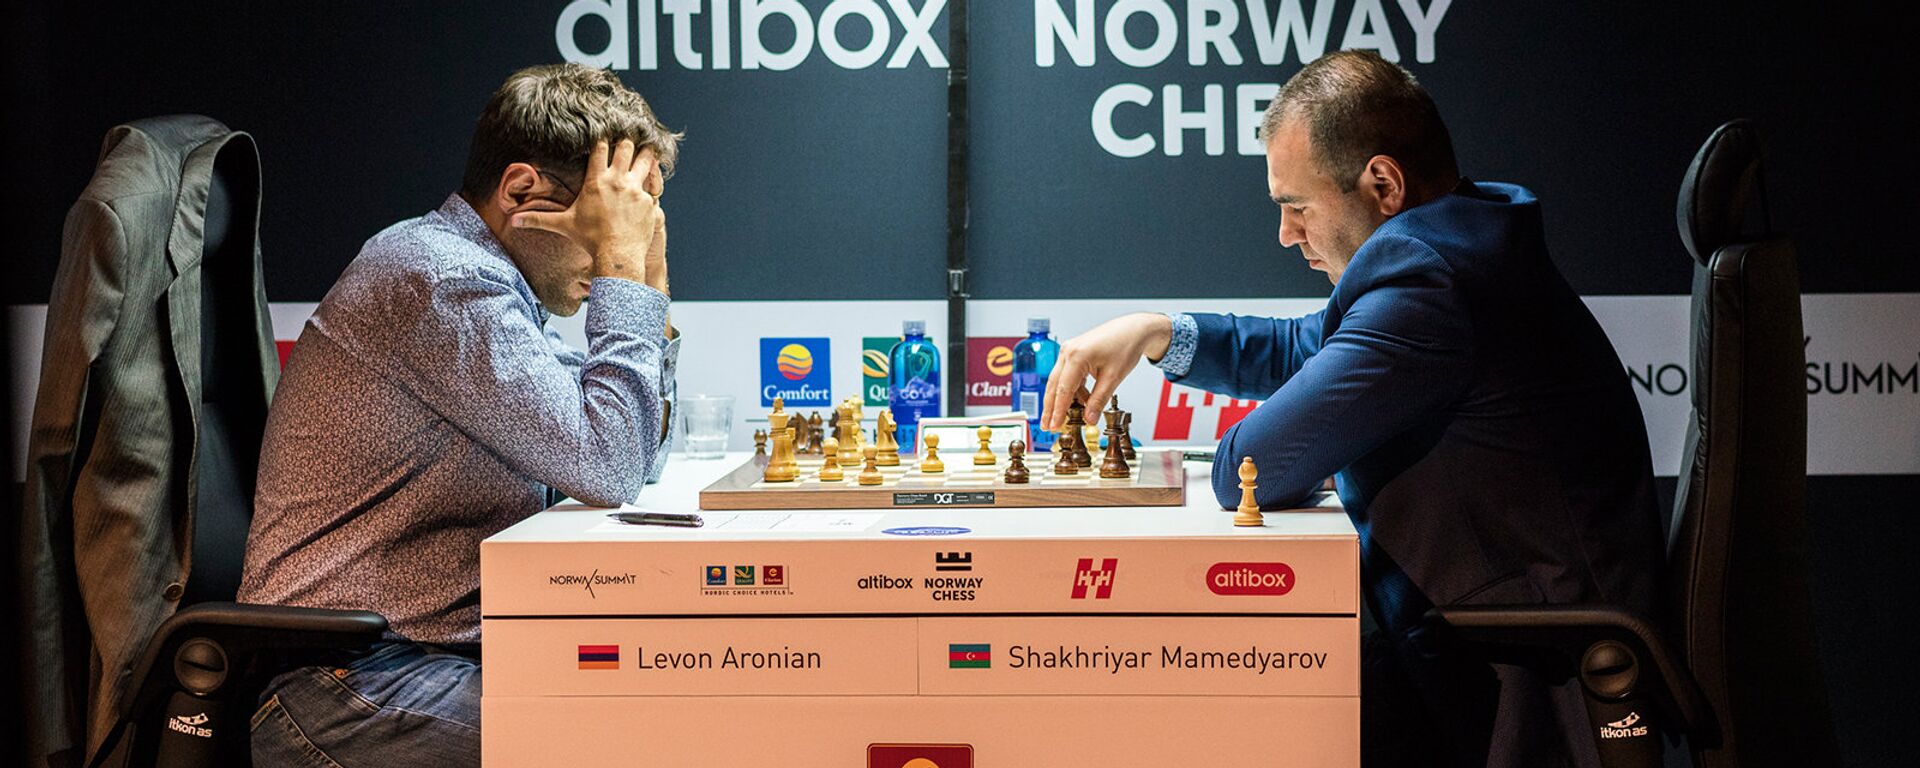 Партия Левон Аронян Шахрияр Мамедъяров в турнире Altibox Norway Chess 2018 (1 июня 2018). Ставангер, Норвегия - Sputnik Армения, 1920, 11.09.2021